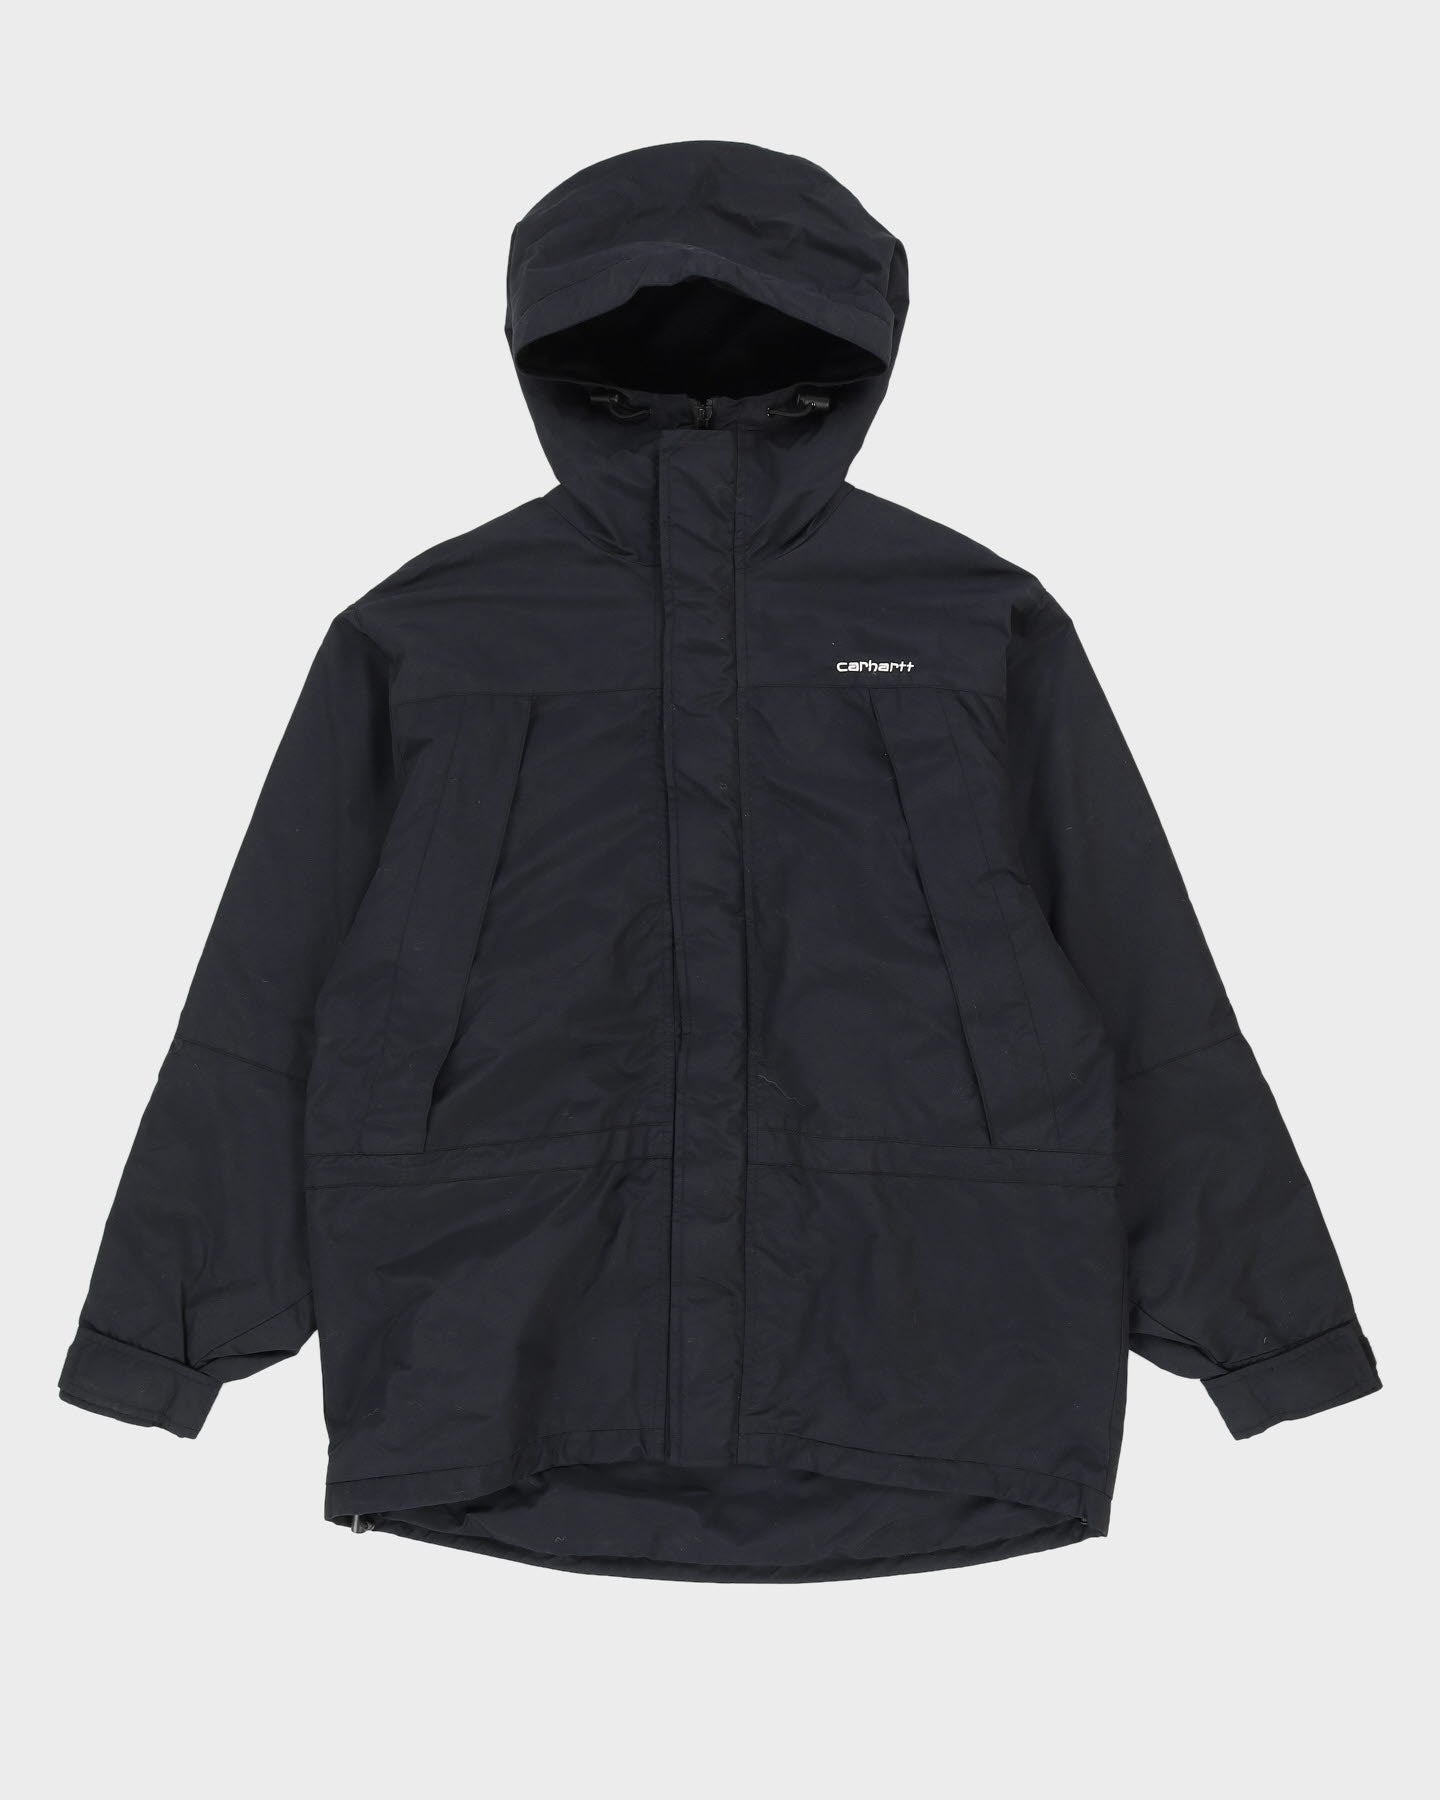 Carhartt Fleece Lined Black Jacket - L